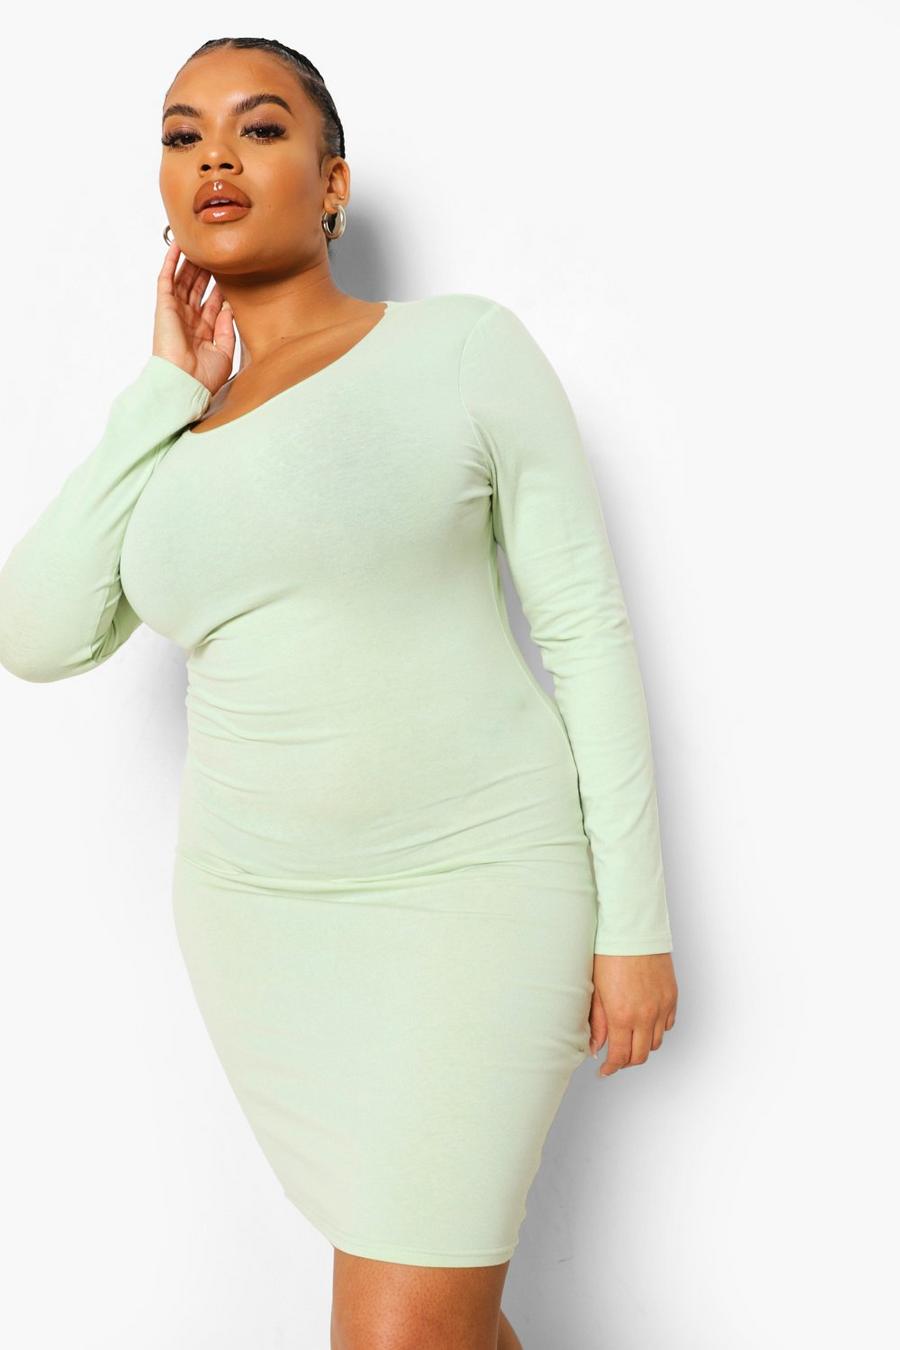 ליים green שמלה צמודה עם שרוולים ארוכים למידות גדולות